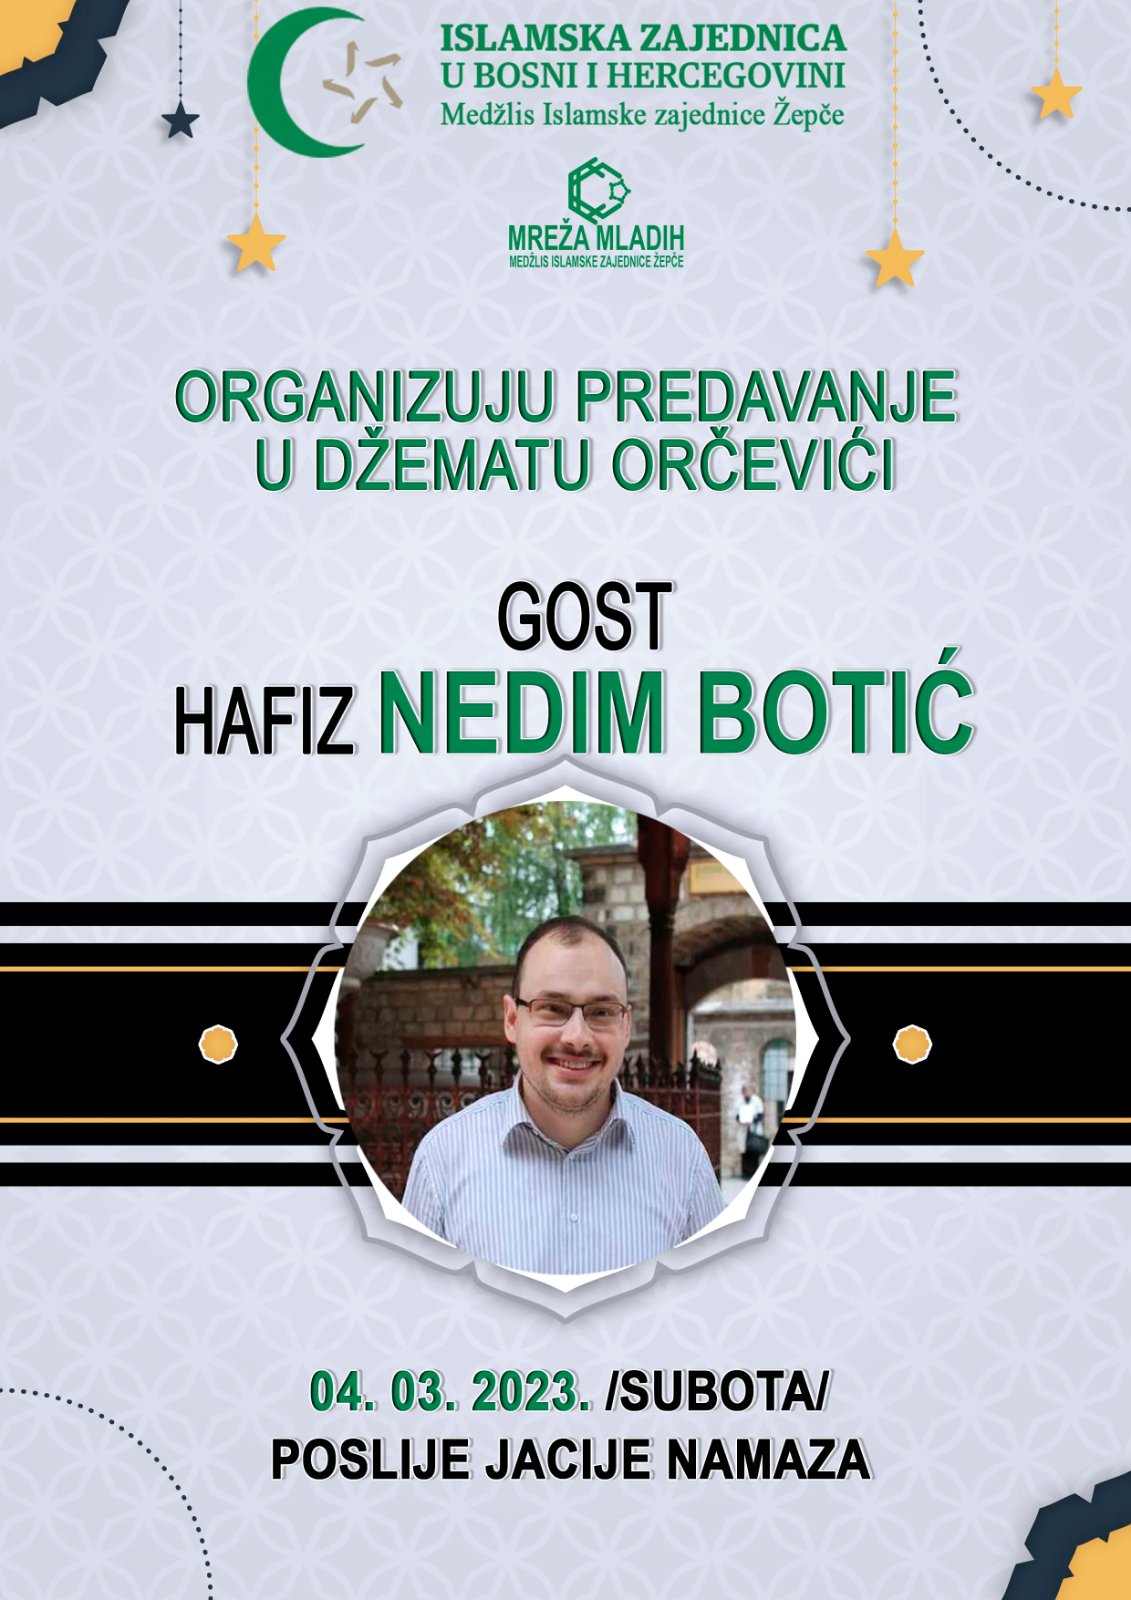 Hafiz Nedim Botić u Orčevićima !